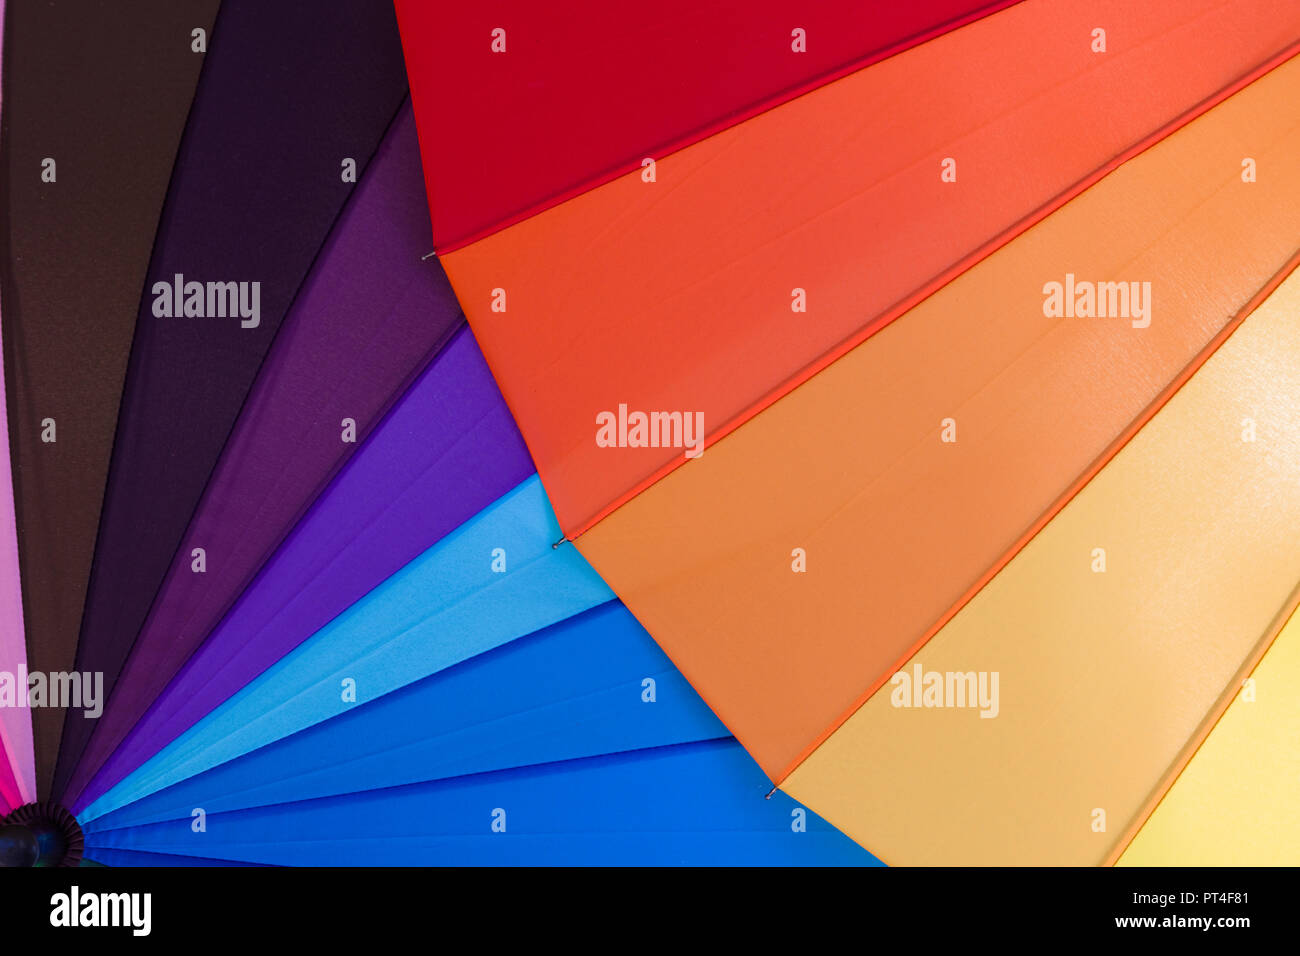 Geométrica abstracta de triángulo en brillantes colores múltiples arco iris Foto de stock